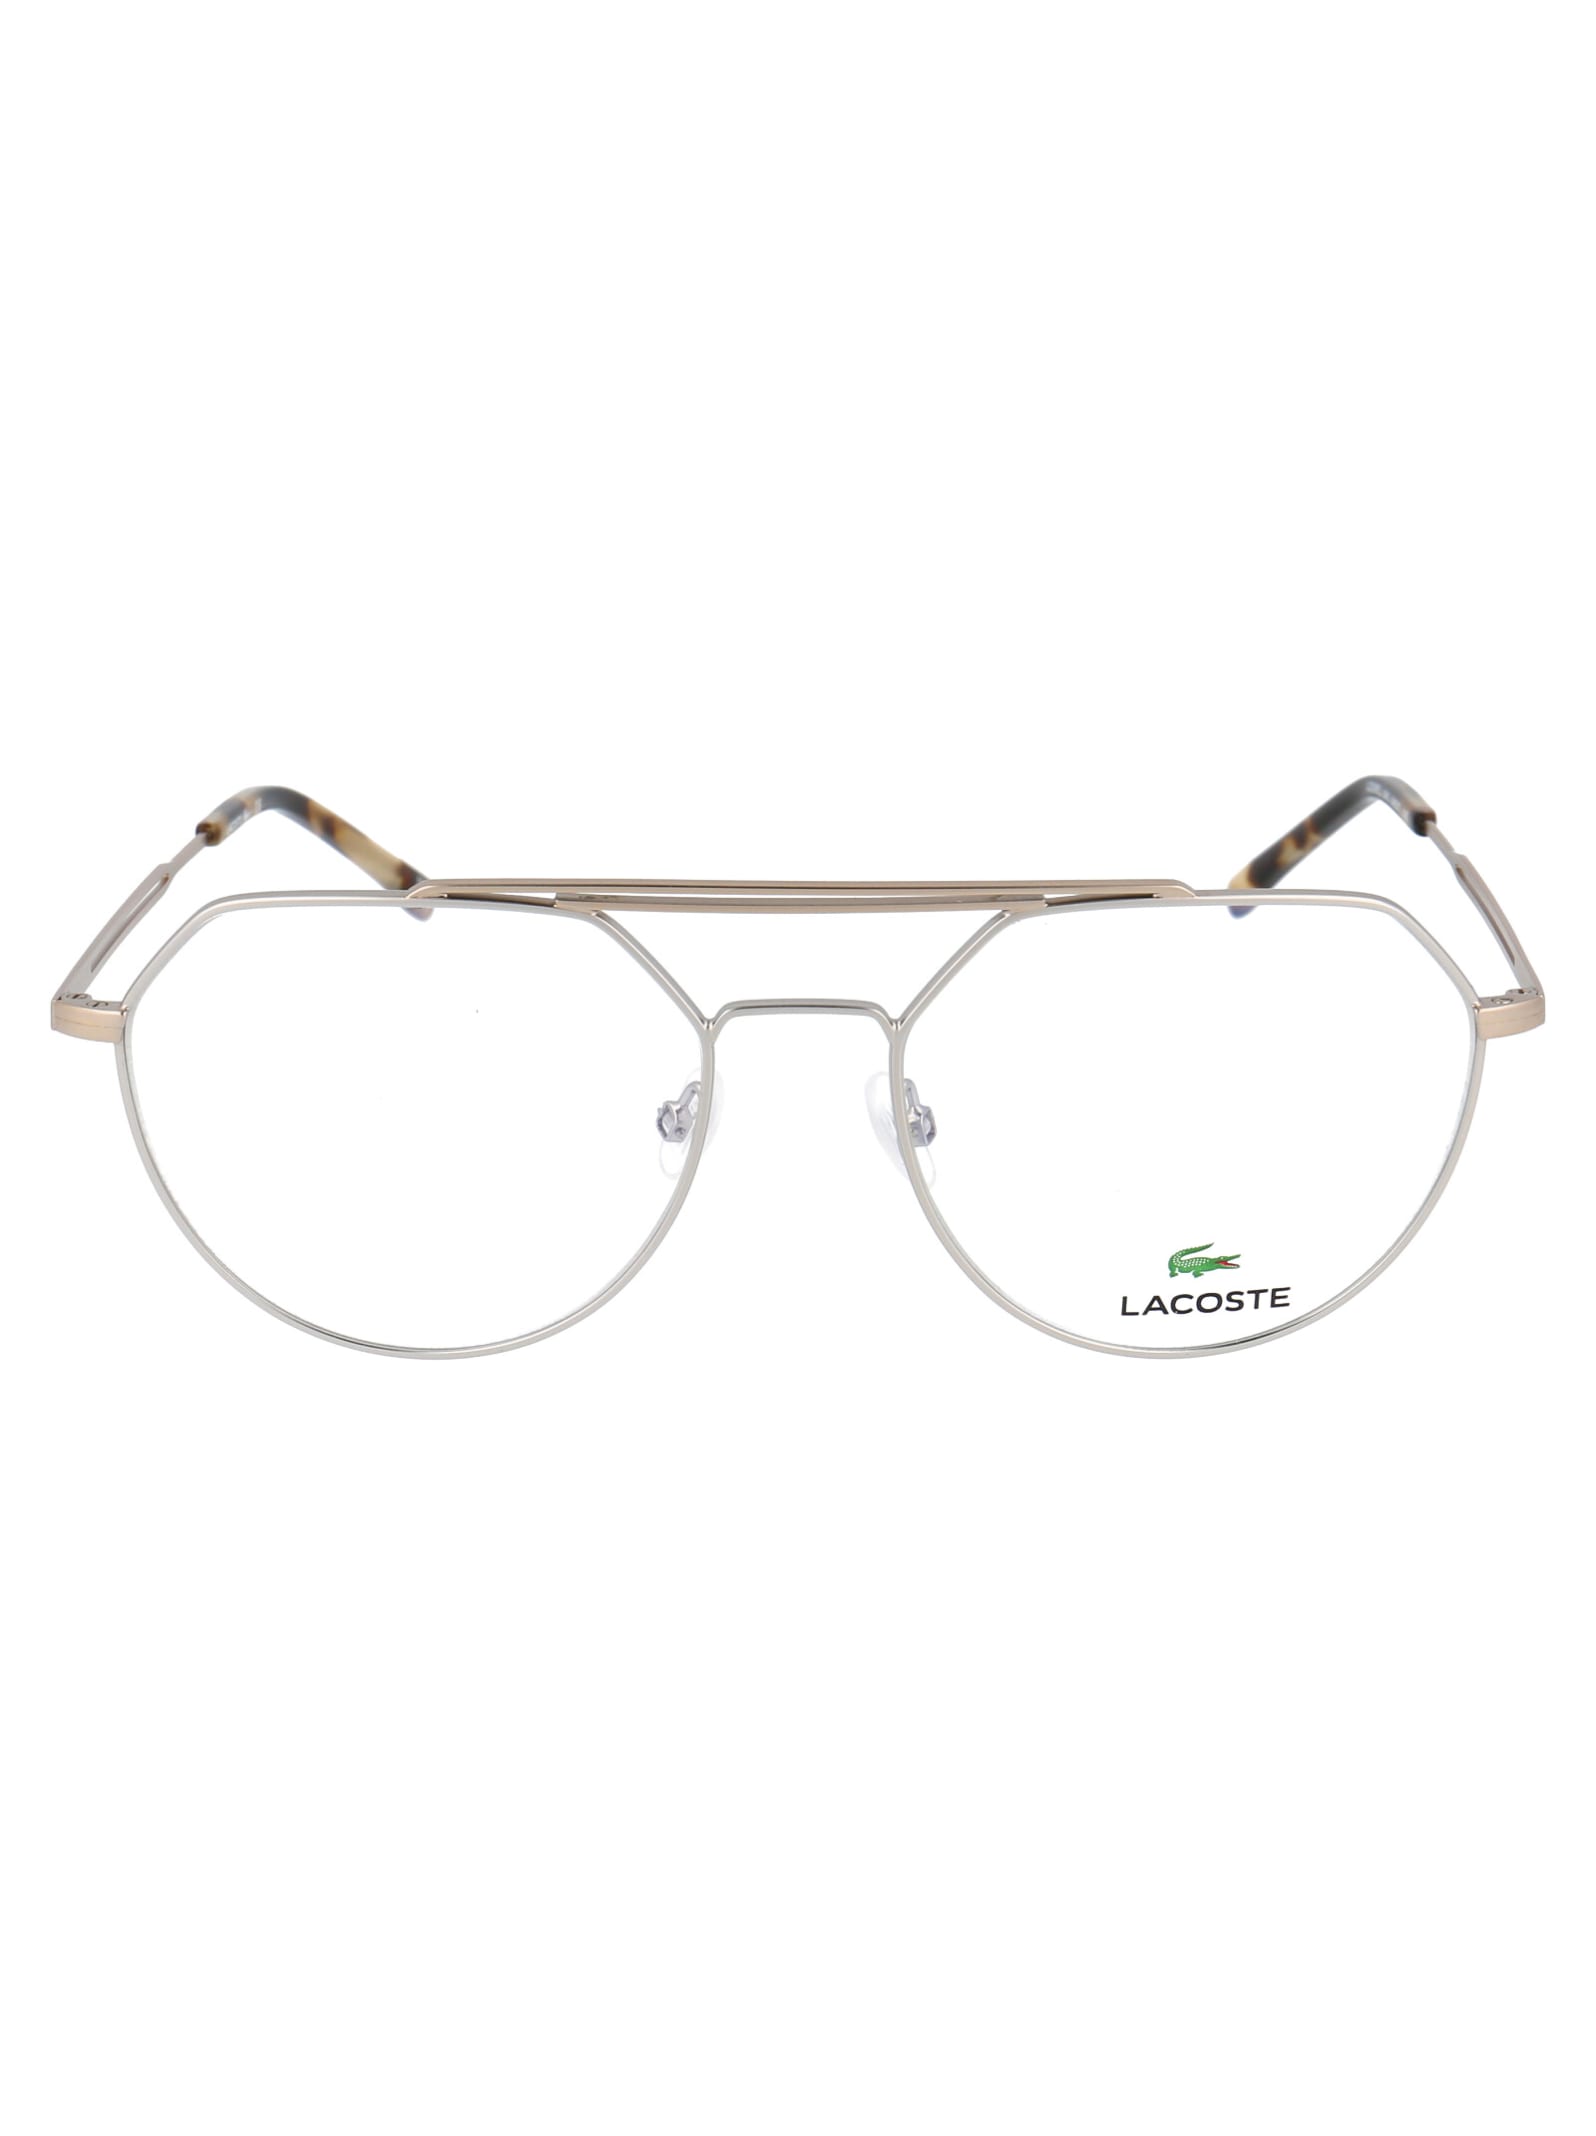 Lacoste L2256pc Glasses In 045 Silver